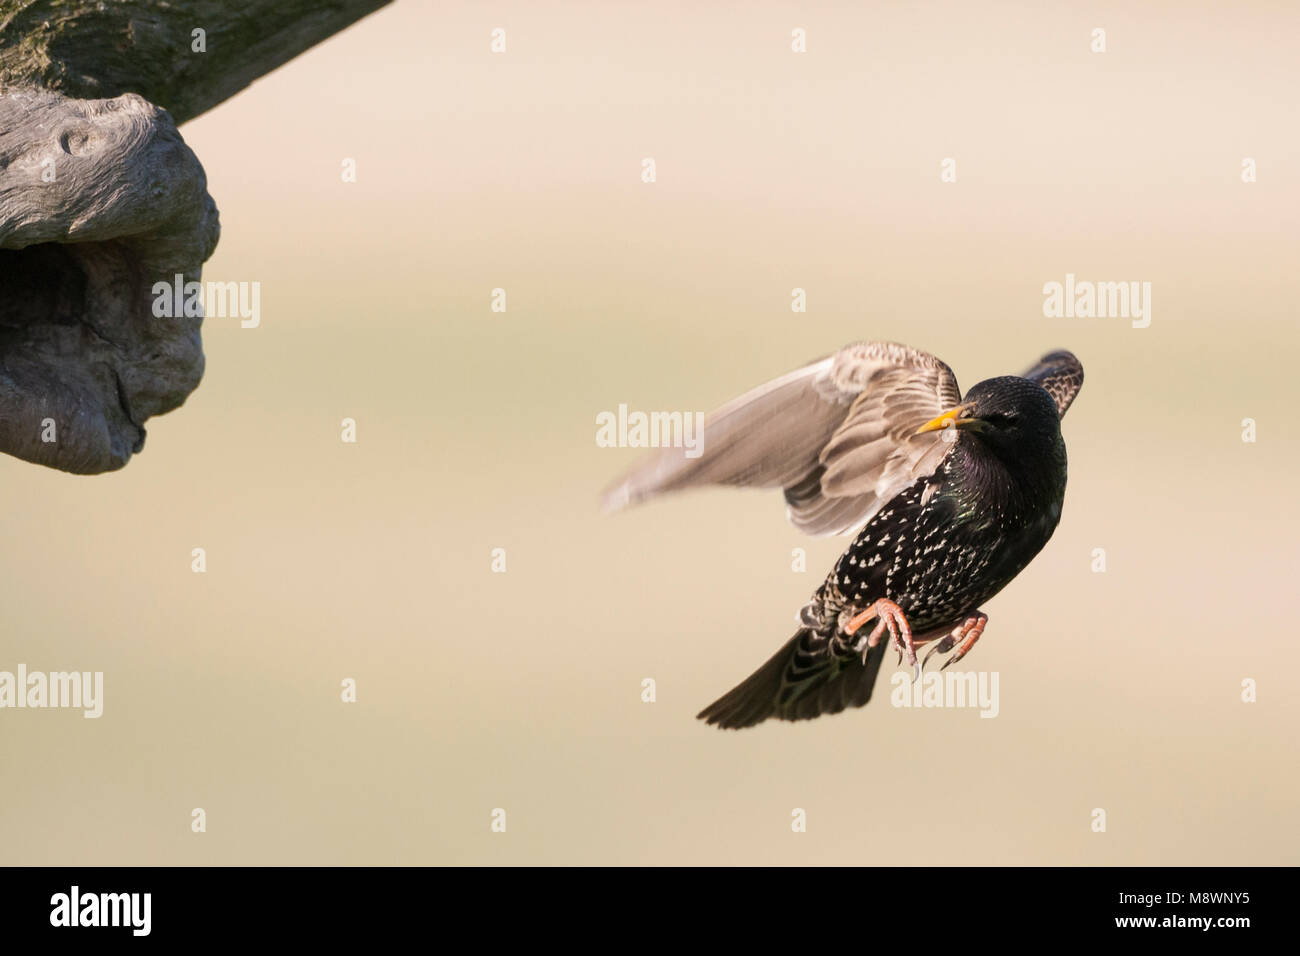 Spreeuw vliegend bij nid ; Étourneau Sansonnet volant près de nest Banque D'Images